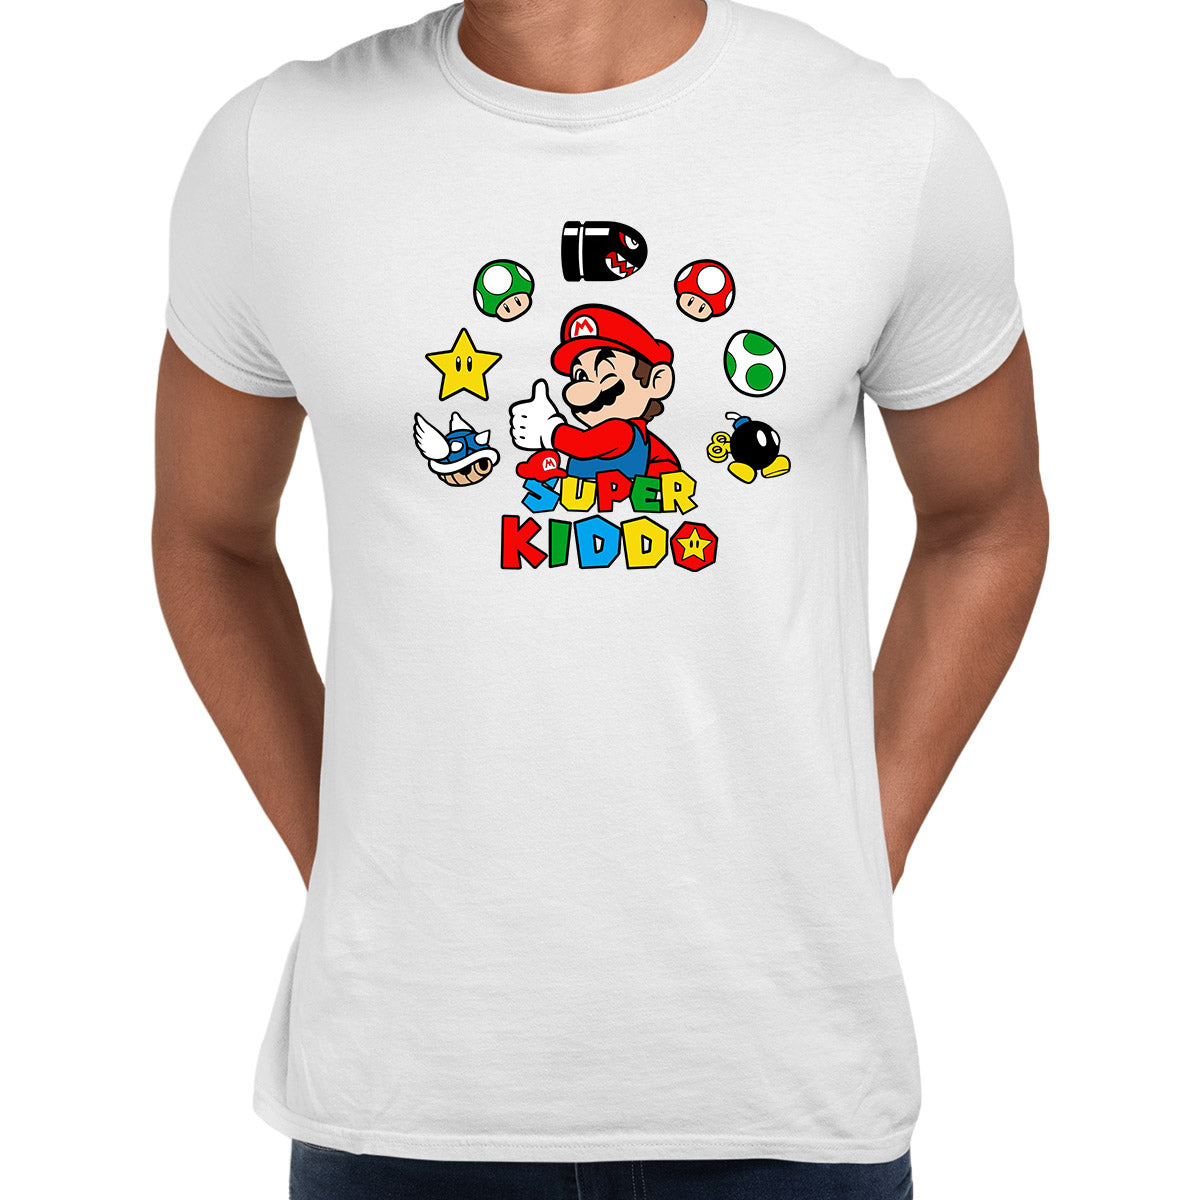 Super Kiddo White T-shirt Mario Birthday